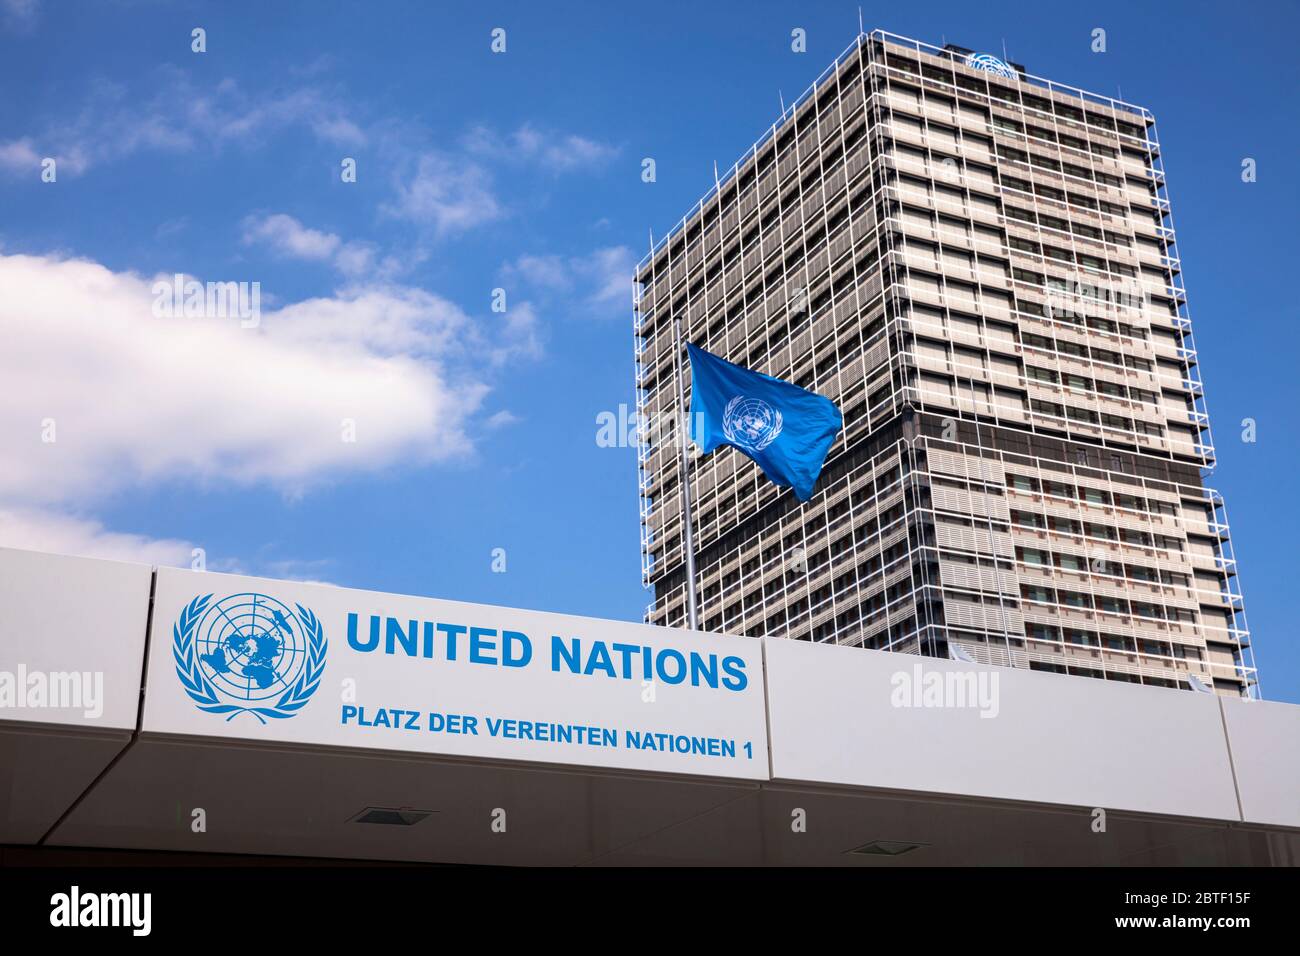 entrée au campus de l'ONU avec le bâtiment de bureaux Tall Eugen, il abrite plusieurs organisations des Nations Unies, Bonn, Rhénanie-du-Nord-Westphalie, Allemagne. Banque D'Images